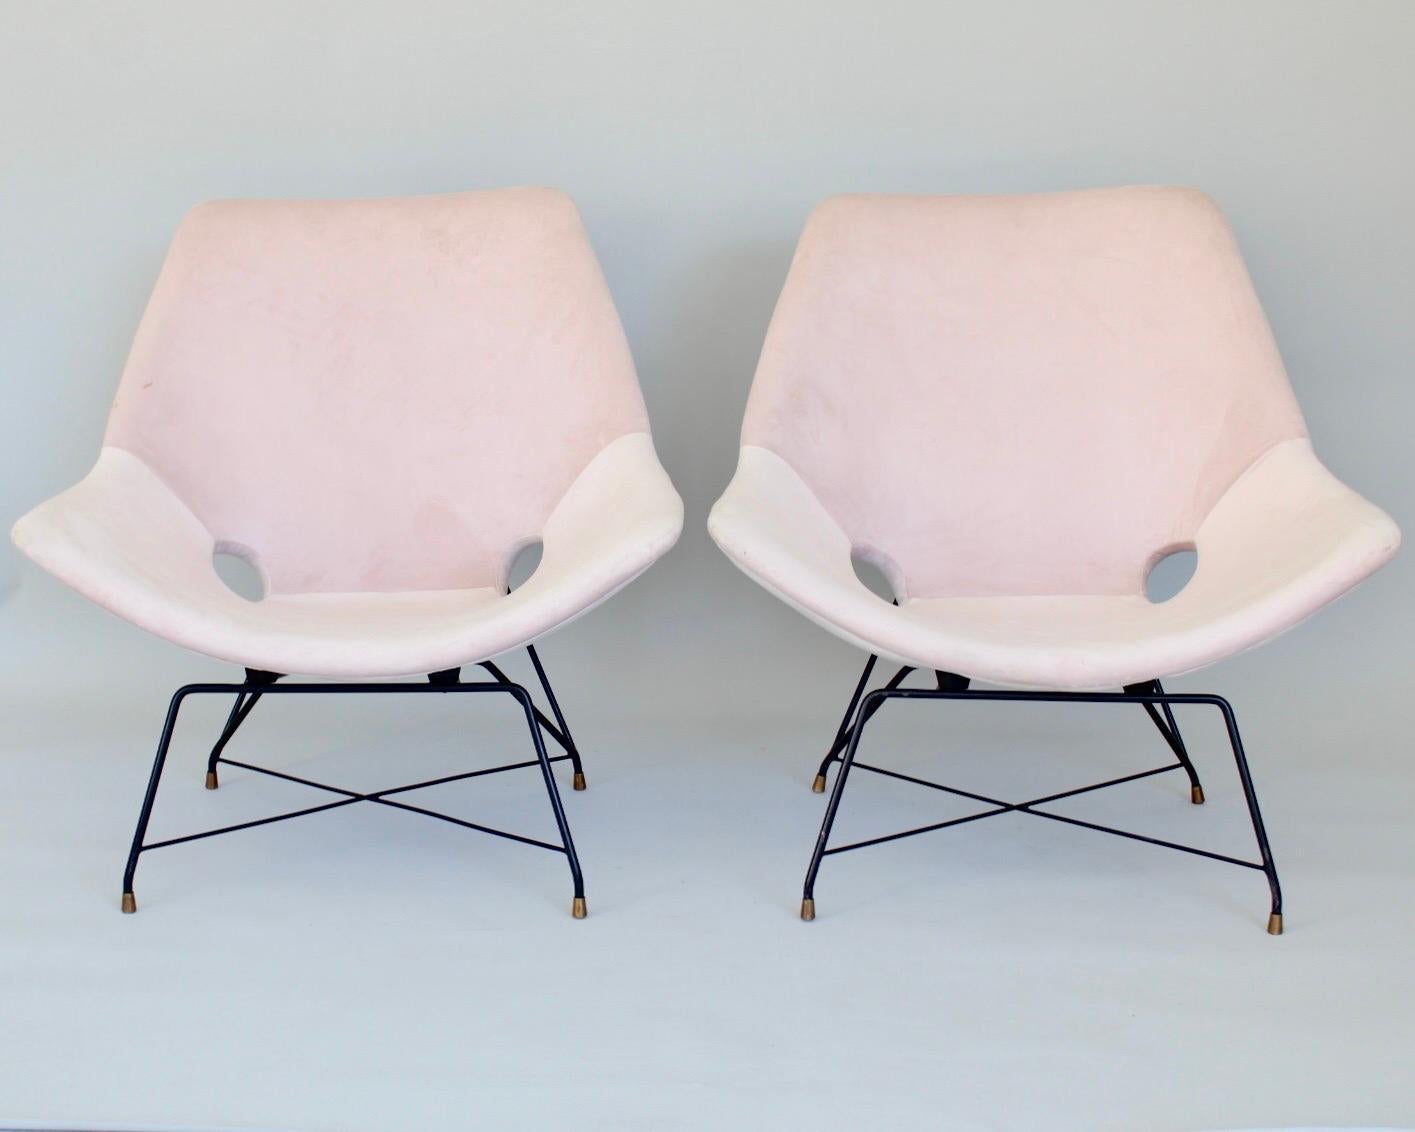 Paire de chaises longues Kosmos conçues par Augusto Bozzi pour Saporiti en Italie, 1954. Les chaises sont retapissées dans un tissu de velours rose pâle, les sièges incurvés sont étonnamment confortables. Les pieds en métal noir sont en excellent